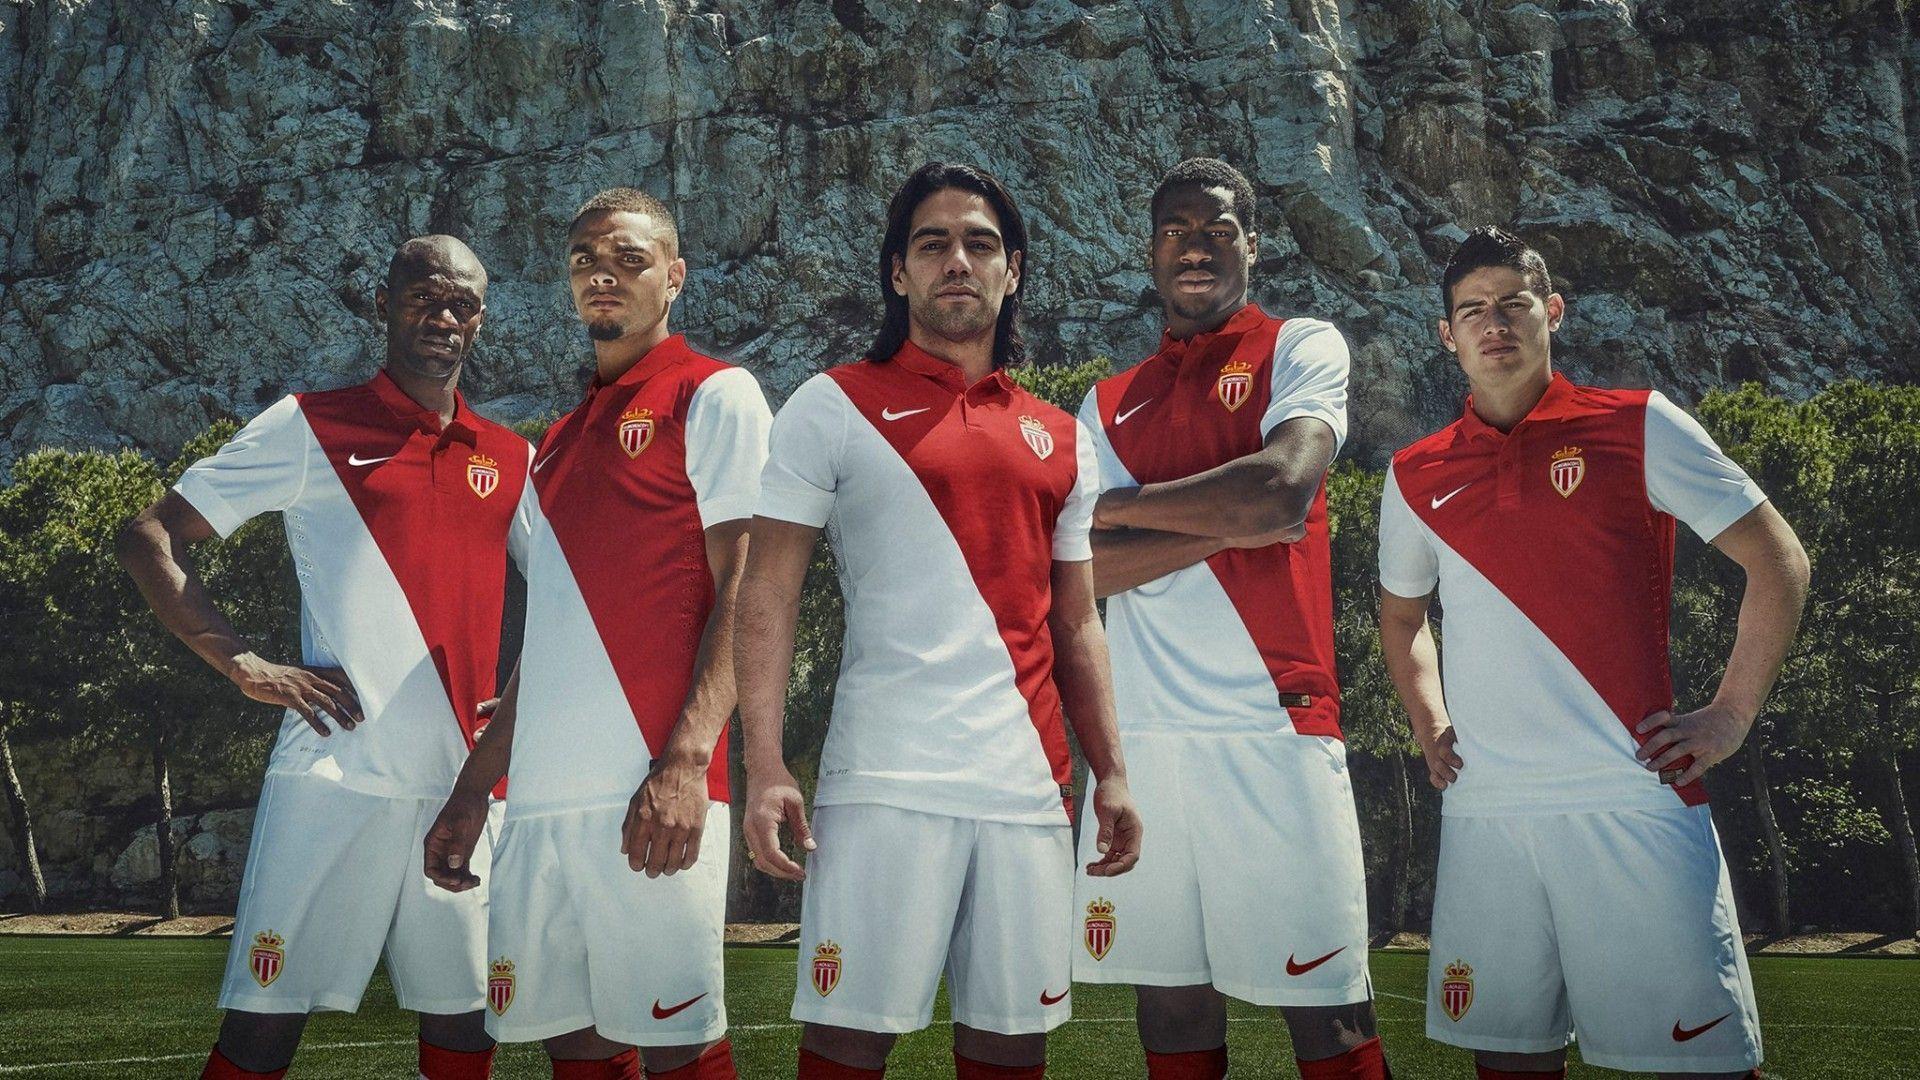 AS Monaco 2014 2015 Nike Home Kit Jersey Wallpaper Wide Or HD